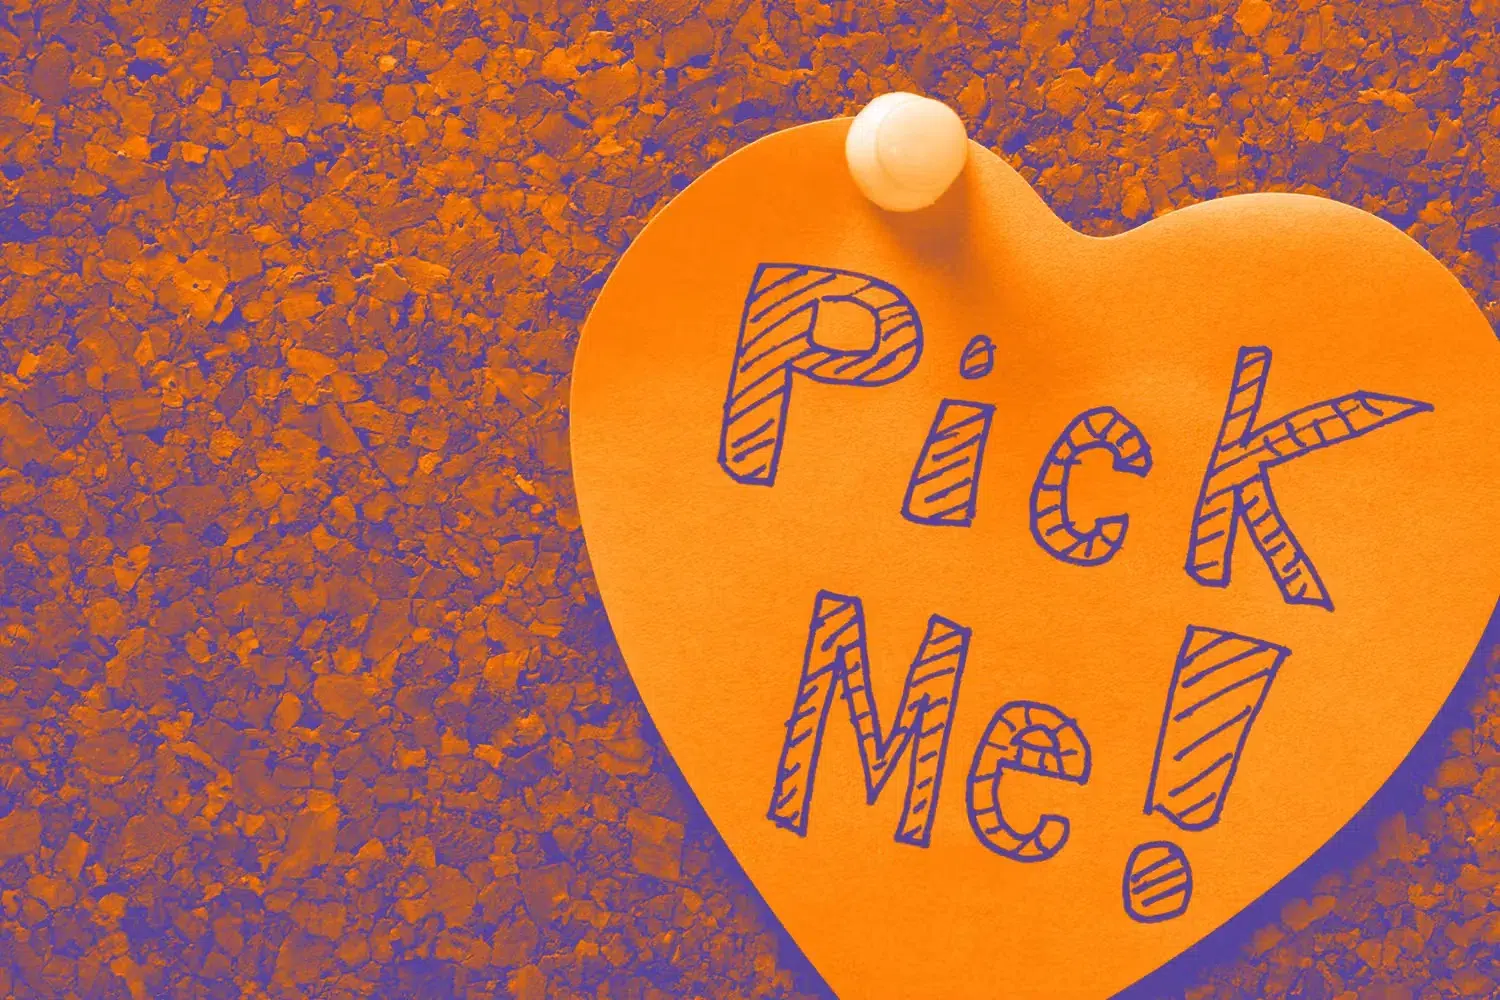 heart spelling "Pick Me!" on it